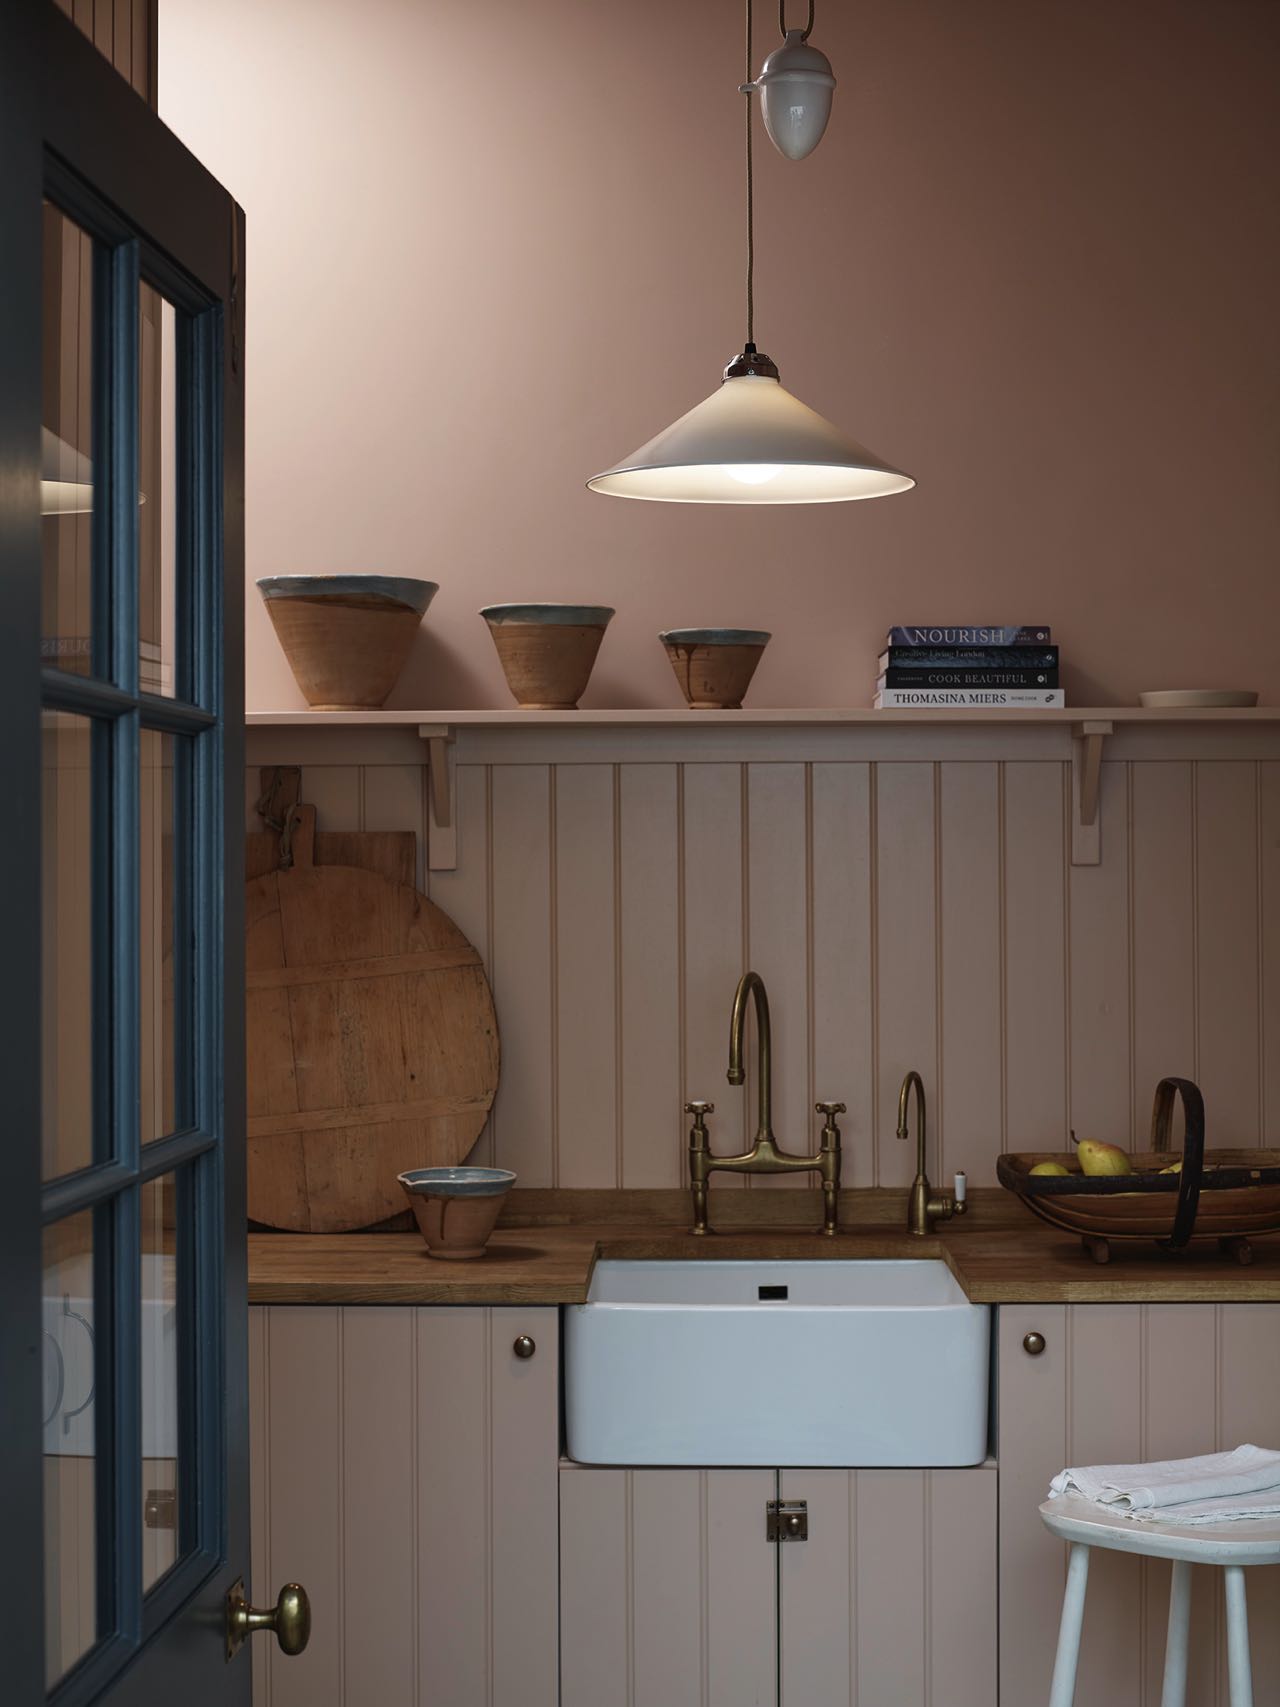 Die Küche im Shaker-Stil bildet eine komplette Einheit mit der Wand. Die Farbe liegt irgendwo zwischen Rosa und hellem Braun. Super schön dazu: die matten Armaturen, Holz- und Keramik-Accessoires. Die stylishe Lampe „Cobb“ ist von Original BTC.